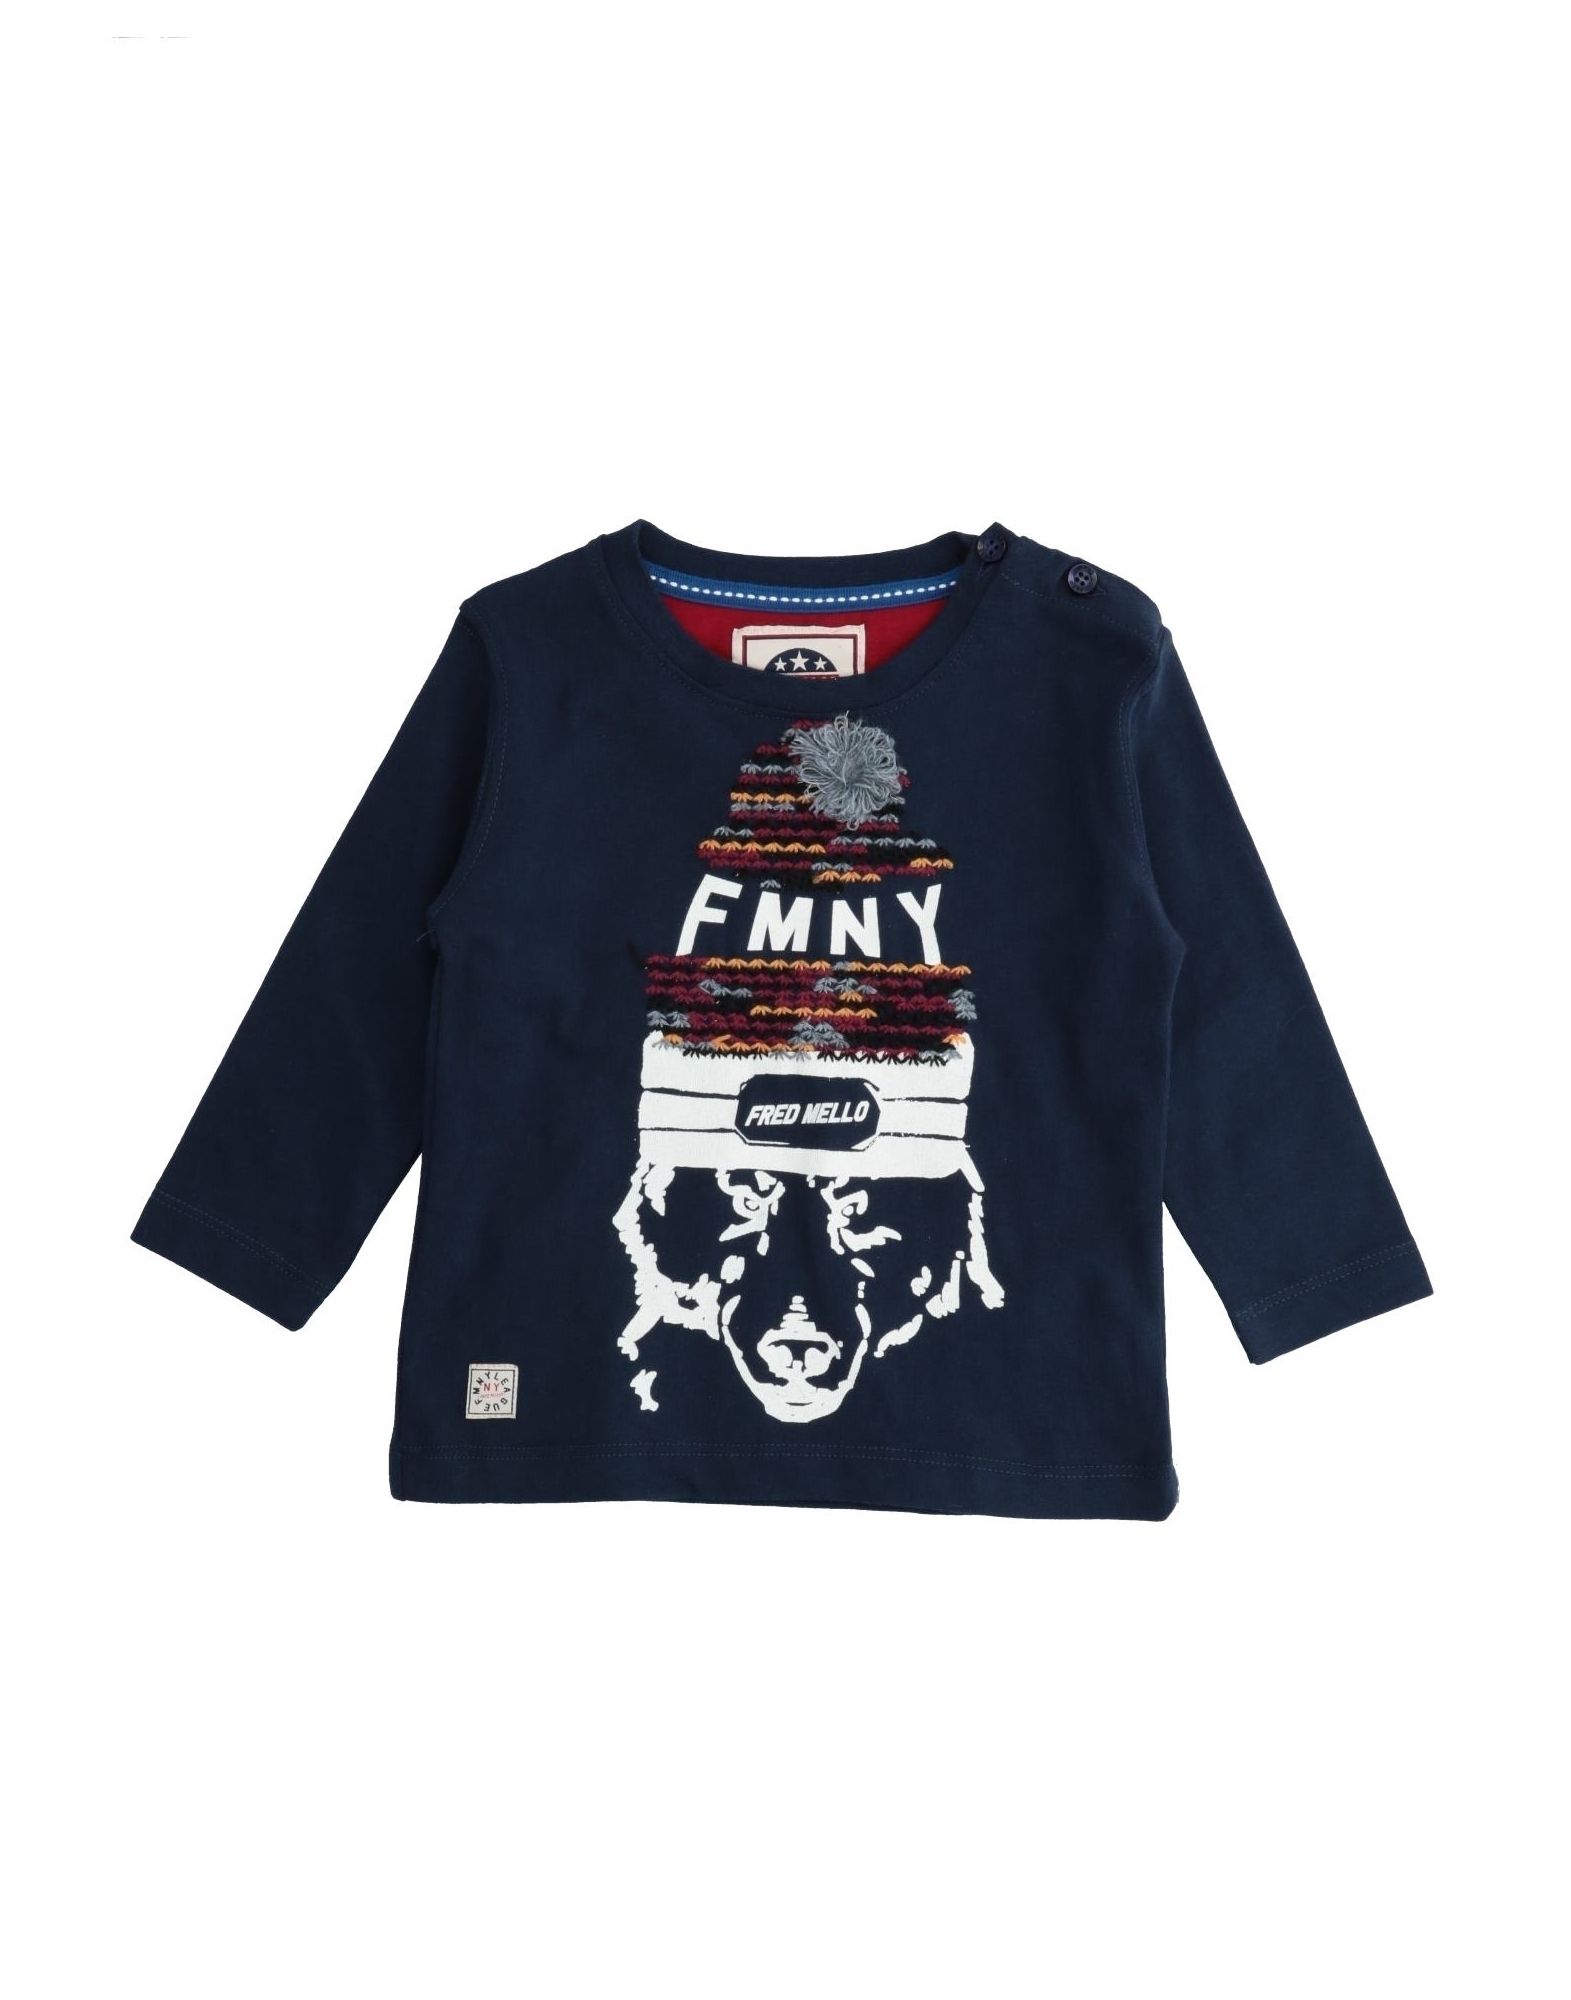 Fred Mello Kids' T-shirts In Dark Blue